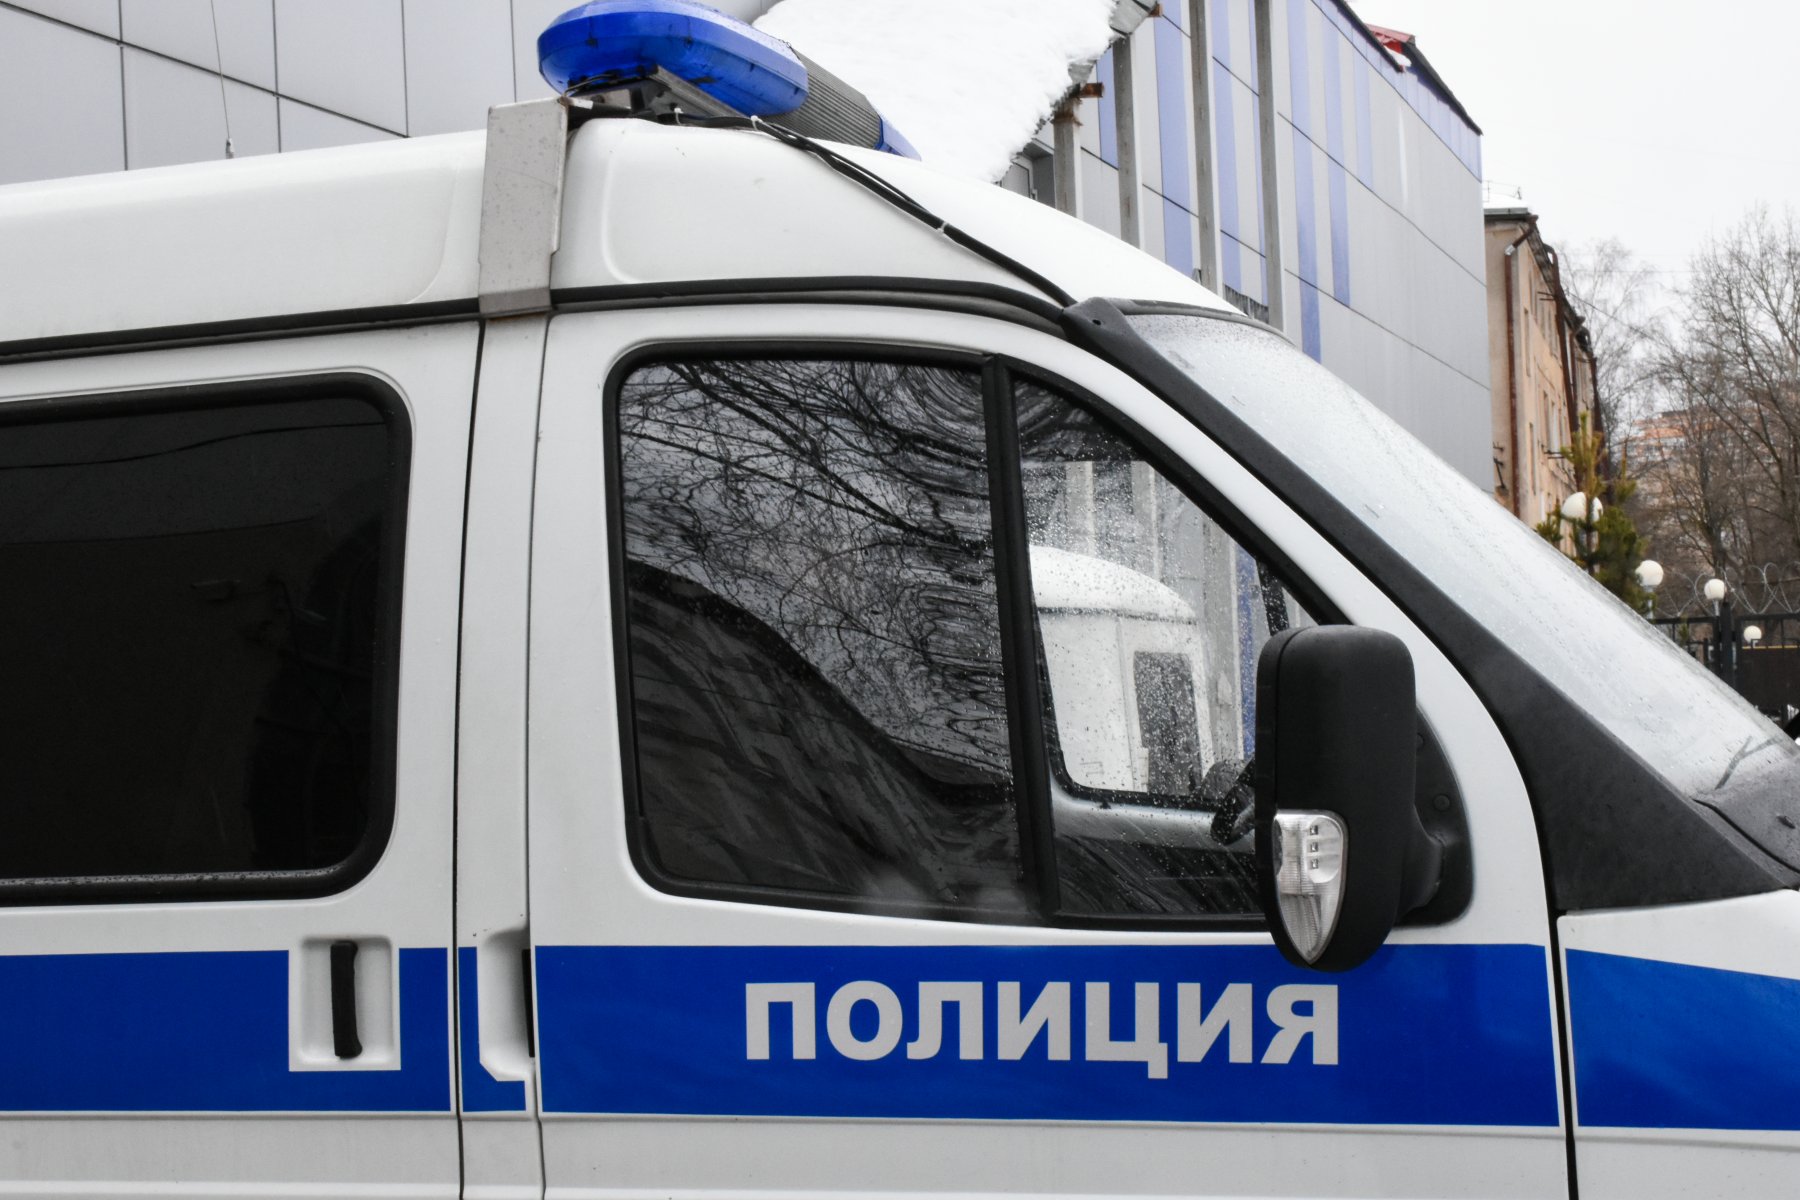 Рецидивиста задержали за ограбления салонов сотовой связи в Московской области